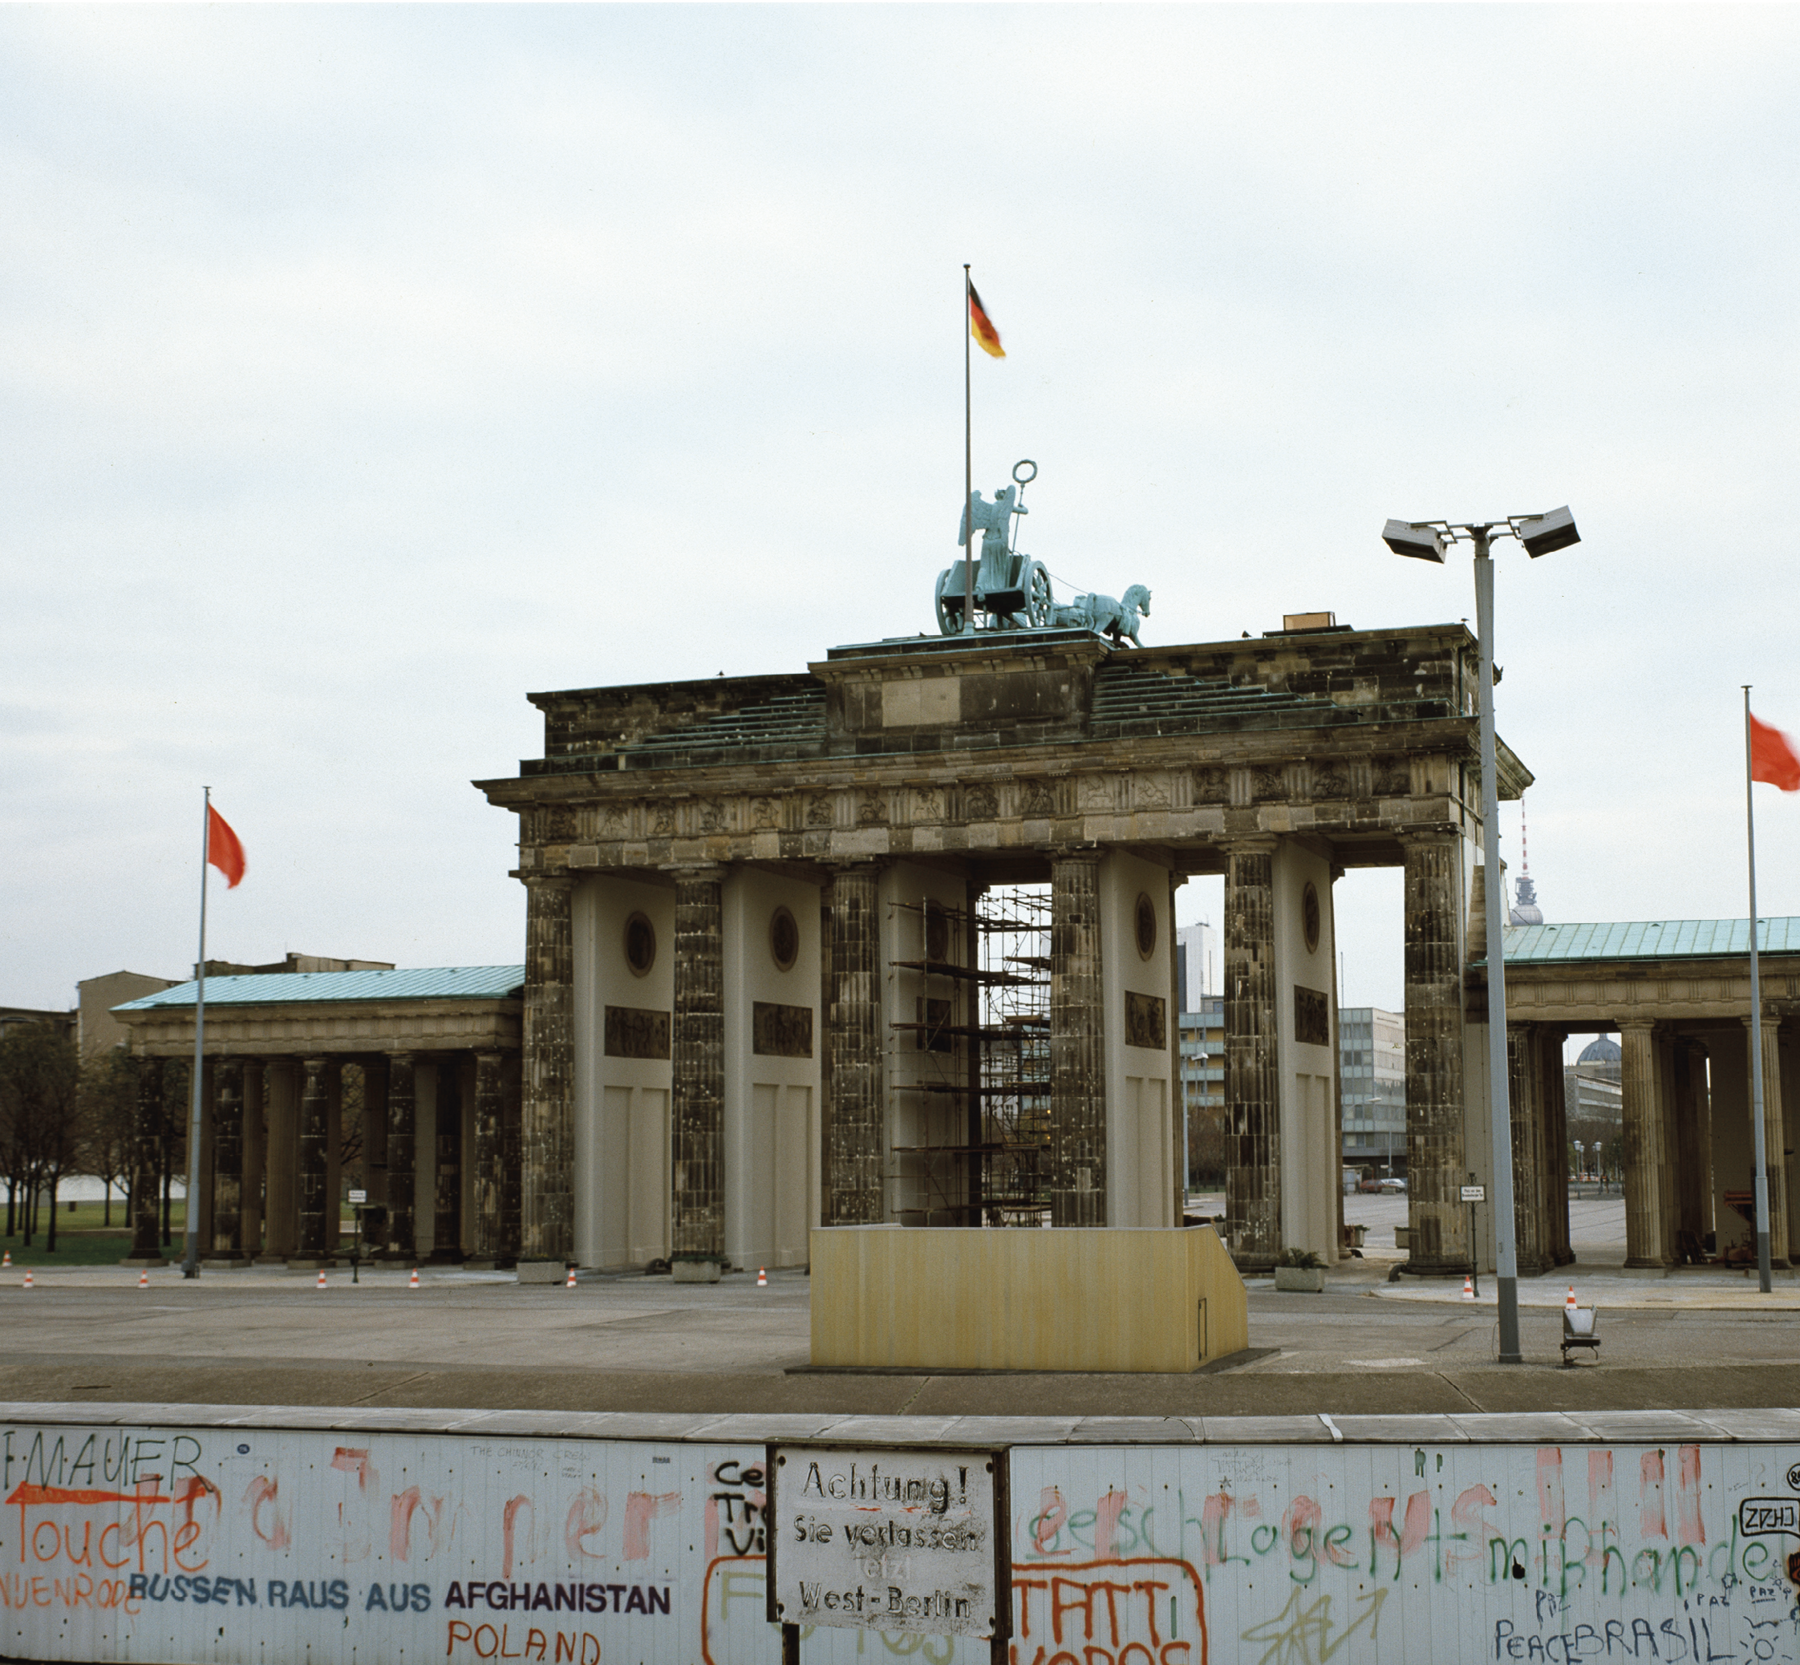 Fotografia. Em lugar aberto, vê-se um muro em primeiro plano, na parte inferior da imagem, cheio de inscrições. Do outro lado do muro, ao fundo, um enorme portão, com seis colunas e cobertura superior, com uma estátua acima e a bandeira da Alemanha. Trata-se do Portão de Brandenburg, na cidade de Berlim. No alto, céu claro com nuvens esparsas.